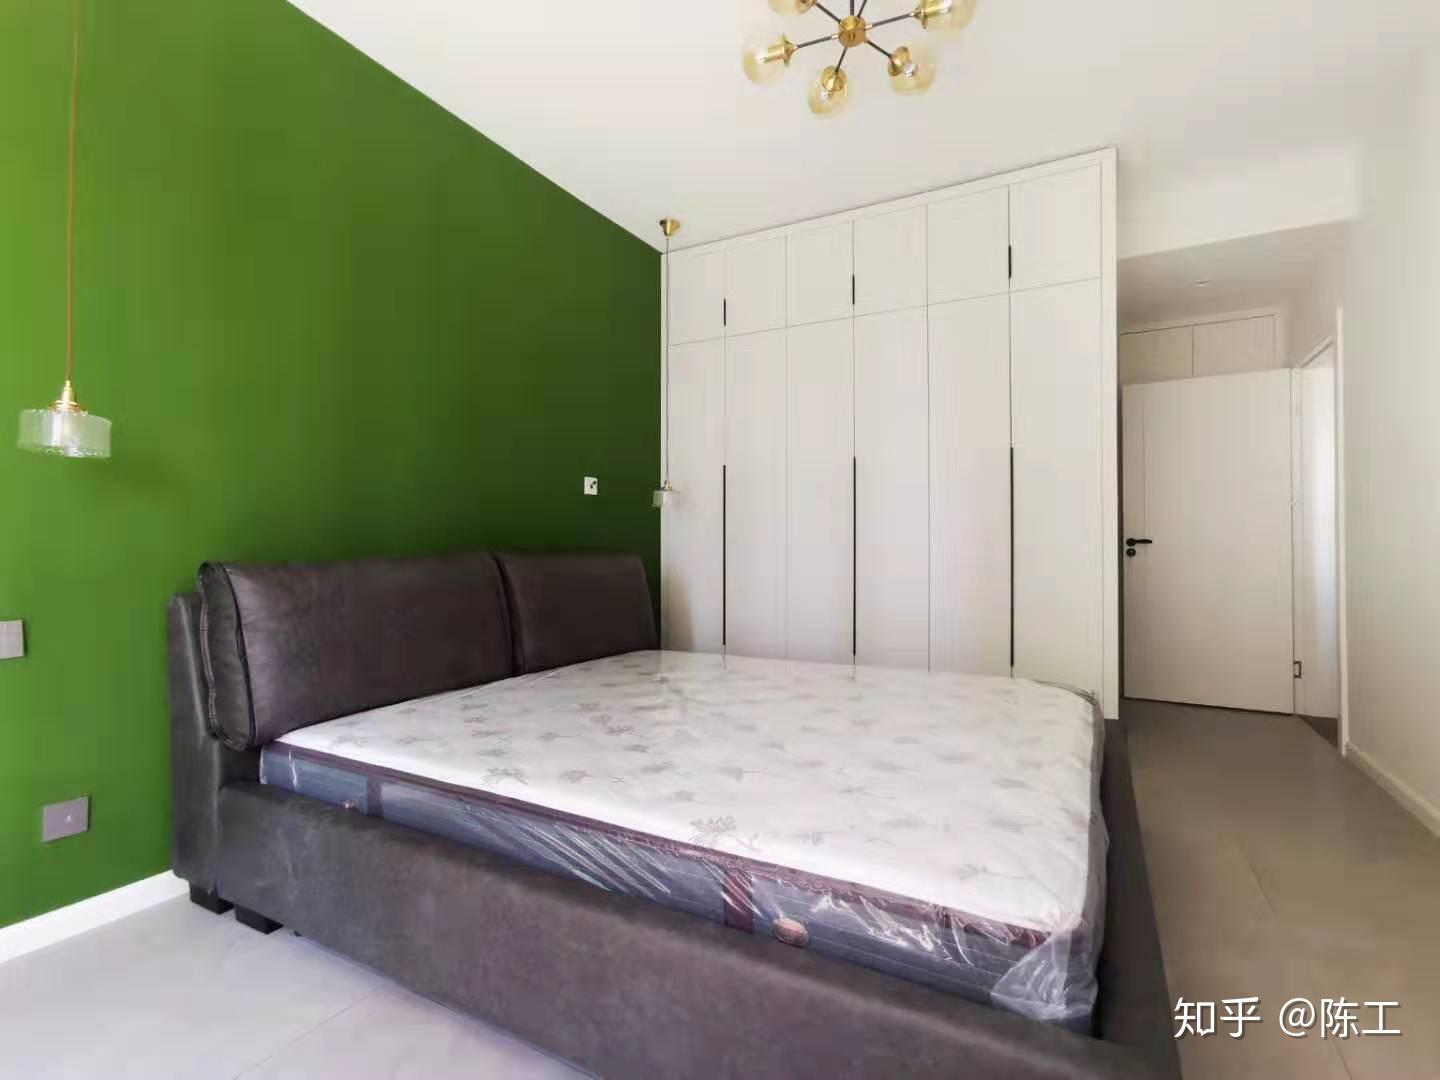 墨绿色为主色的卧室如何选择家具配色